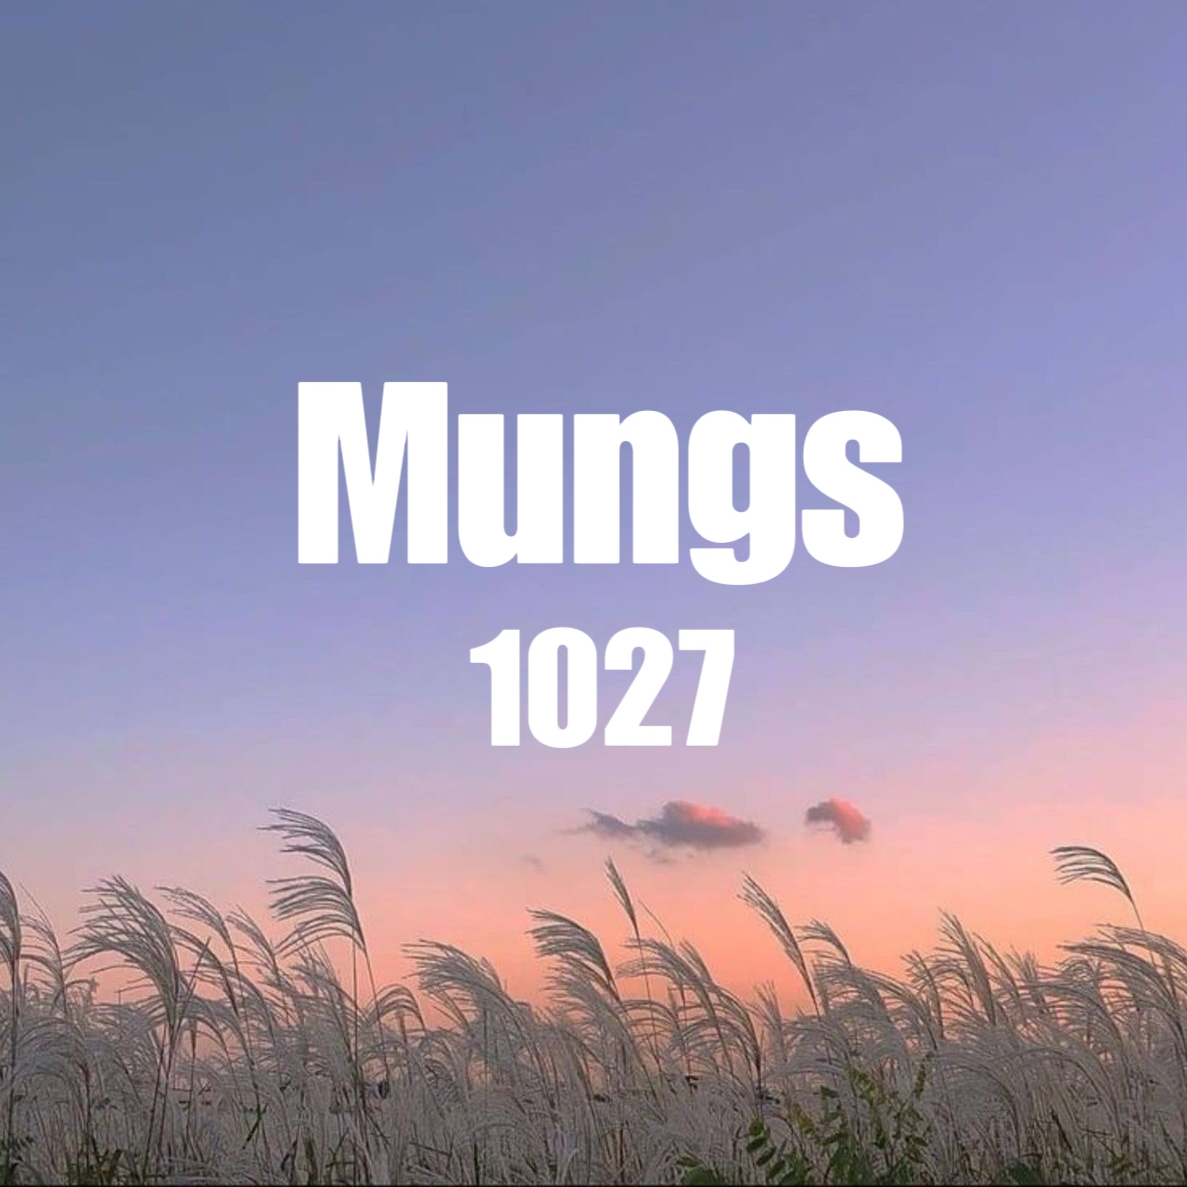 Mungs 1027